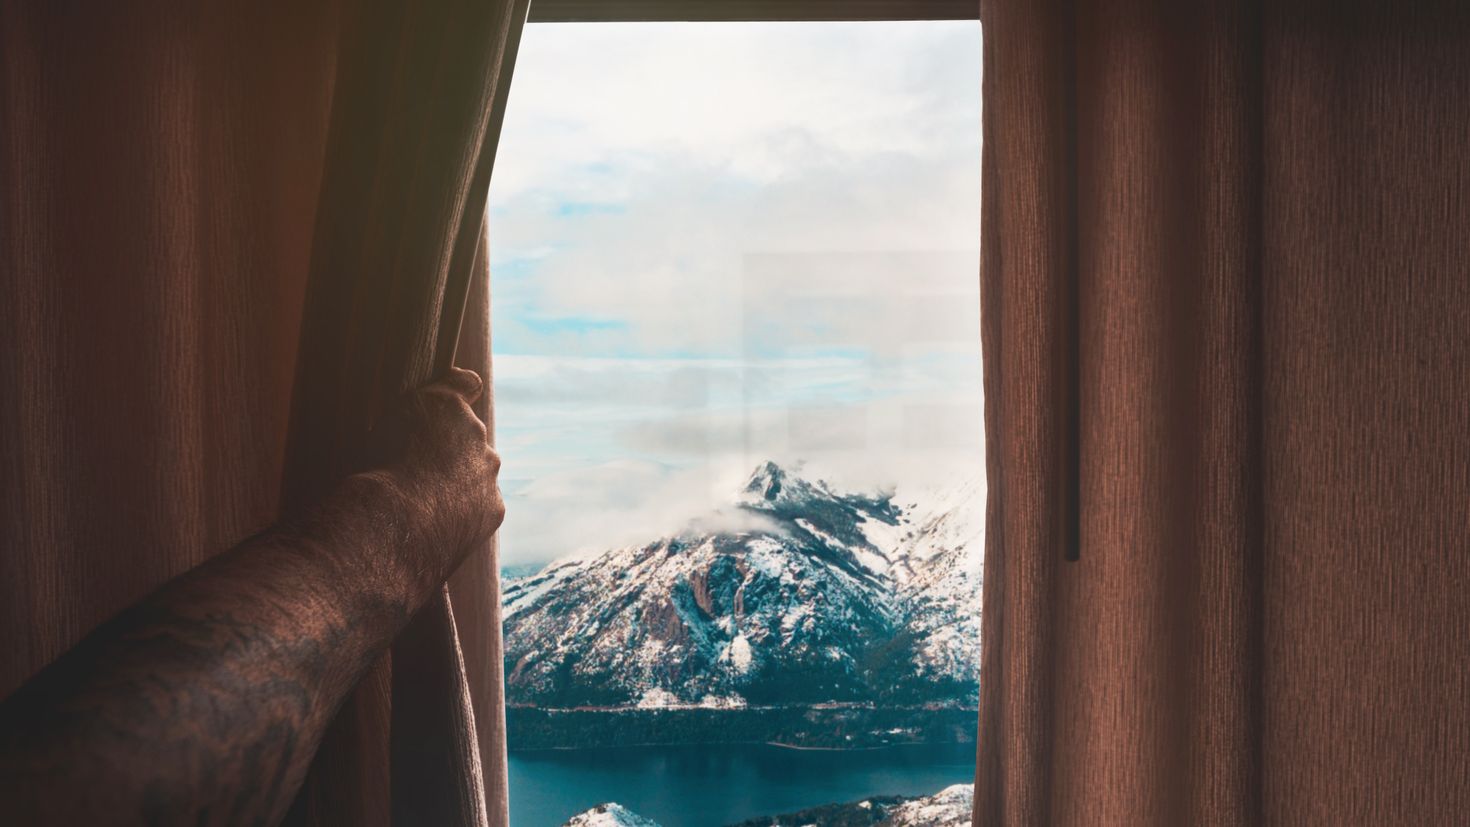 Обои на окно рабочее. Красивый вид из окна. Окно с видом на горы. Вид из окна на горы. Красивый вид из окна на природу.